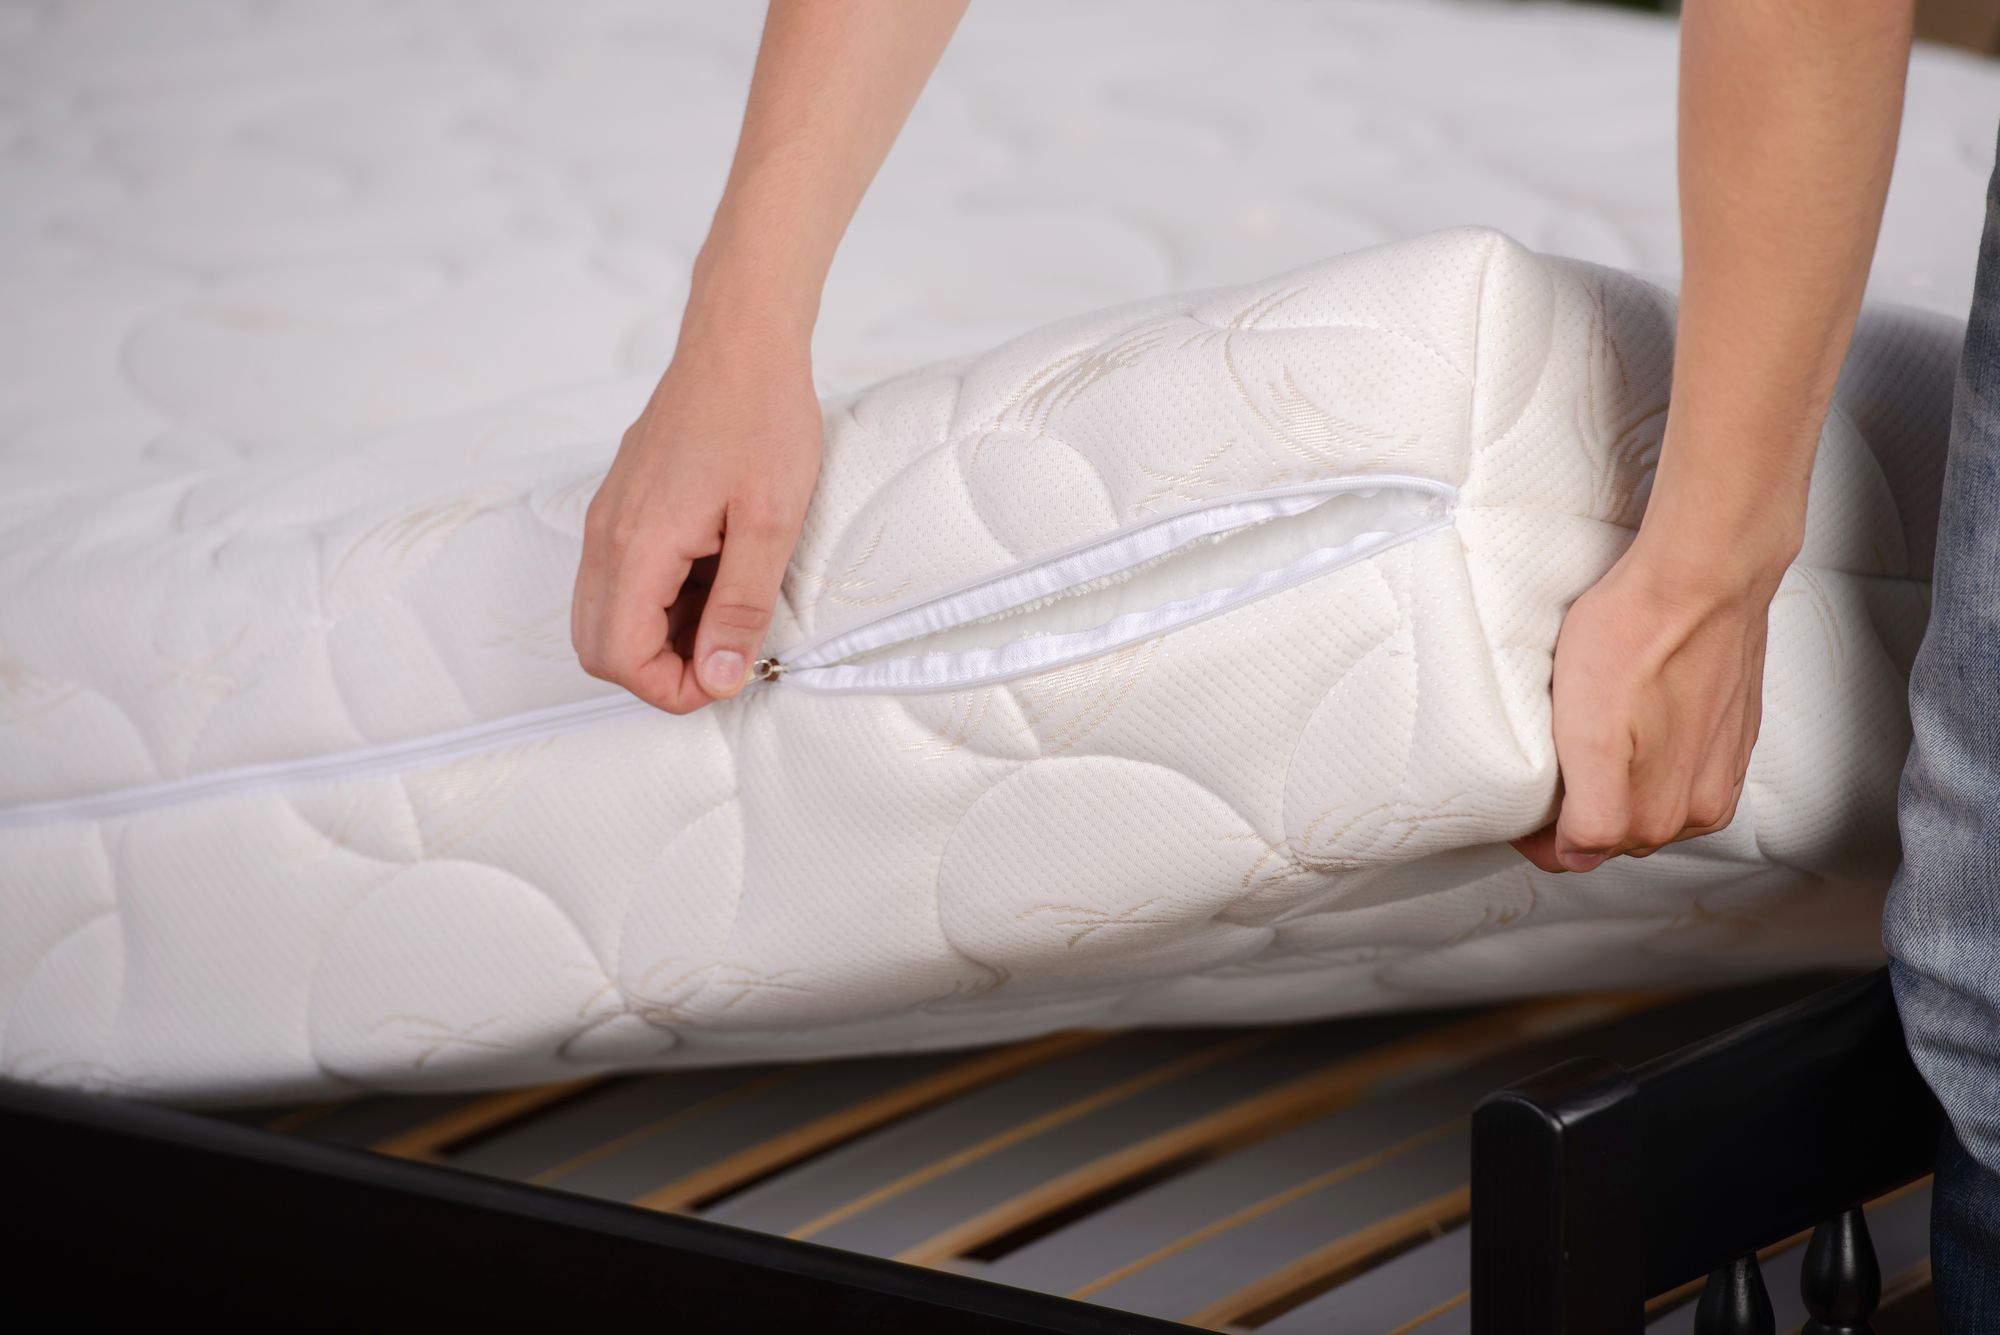 100 latex mattress ikea